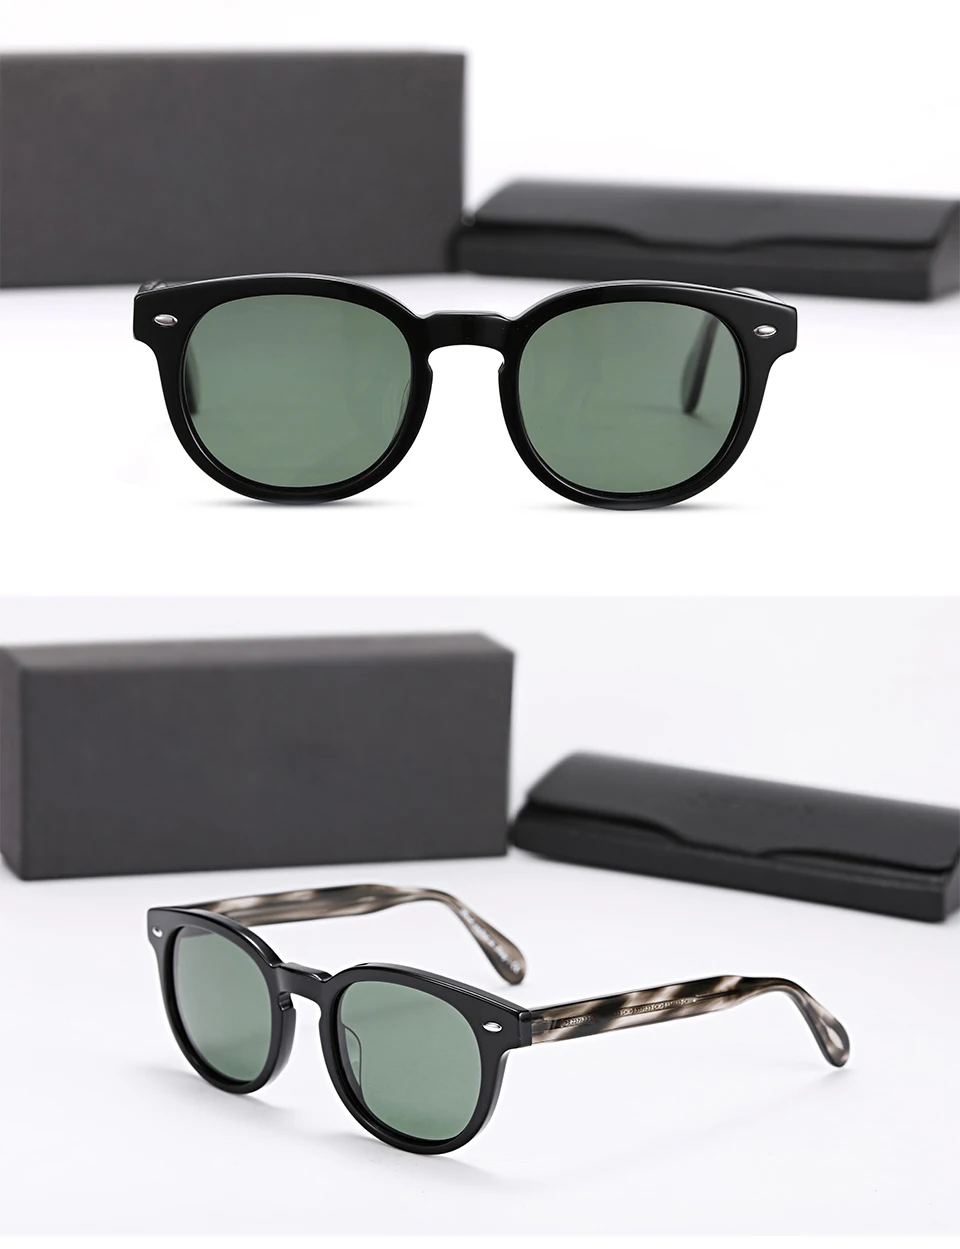 Винтажные круглые мужские солнцезащитные очки и женские брендовые дизайнерские солнцезащитные очки ov5036 sheildrake наивысшего качества поляризованные линзы